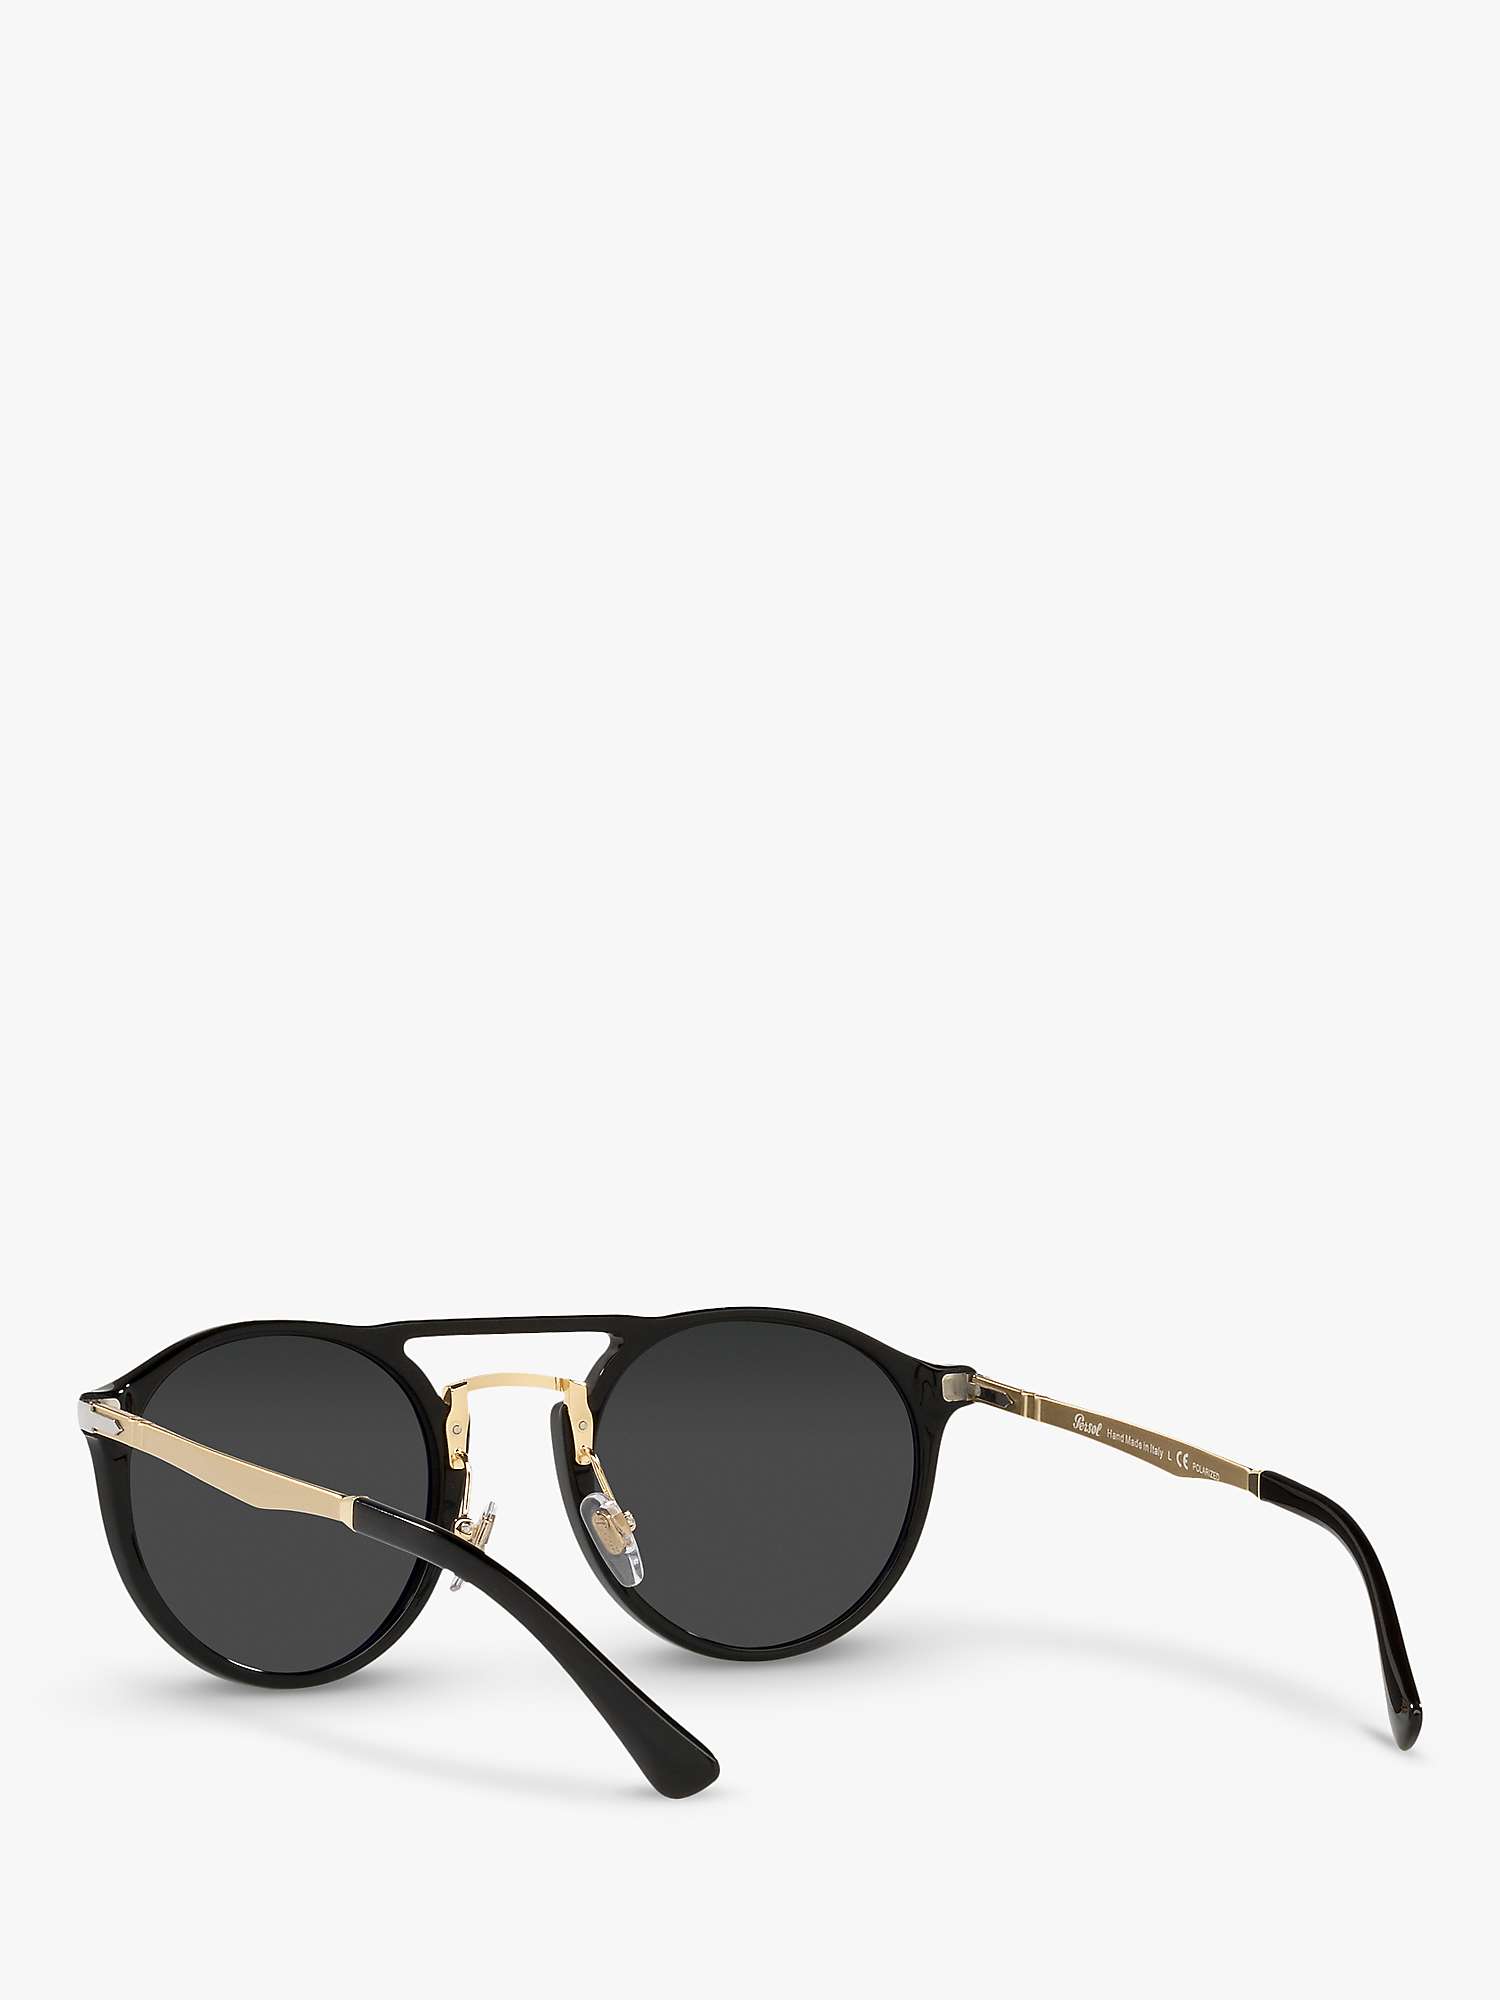 Buy Persol PO3264S Unisex Phantos Polarised Sunglasses, Black/Gold Online at johnlewis.com